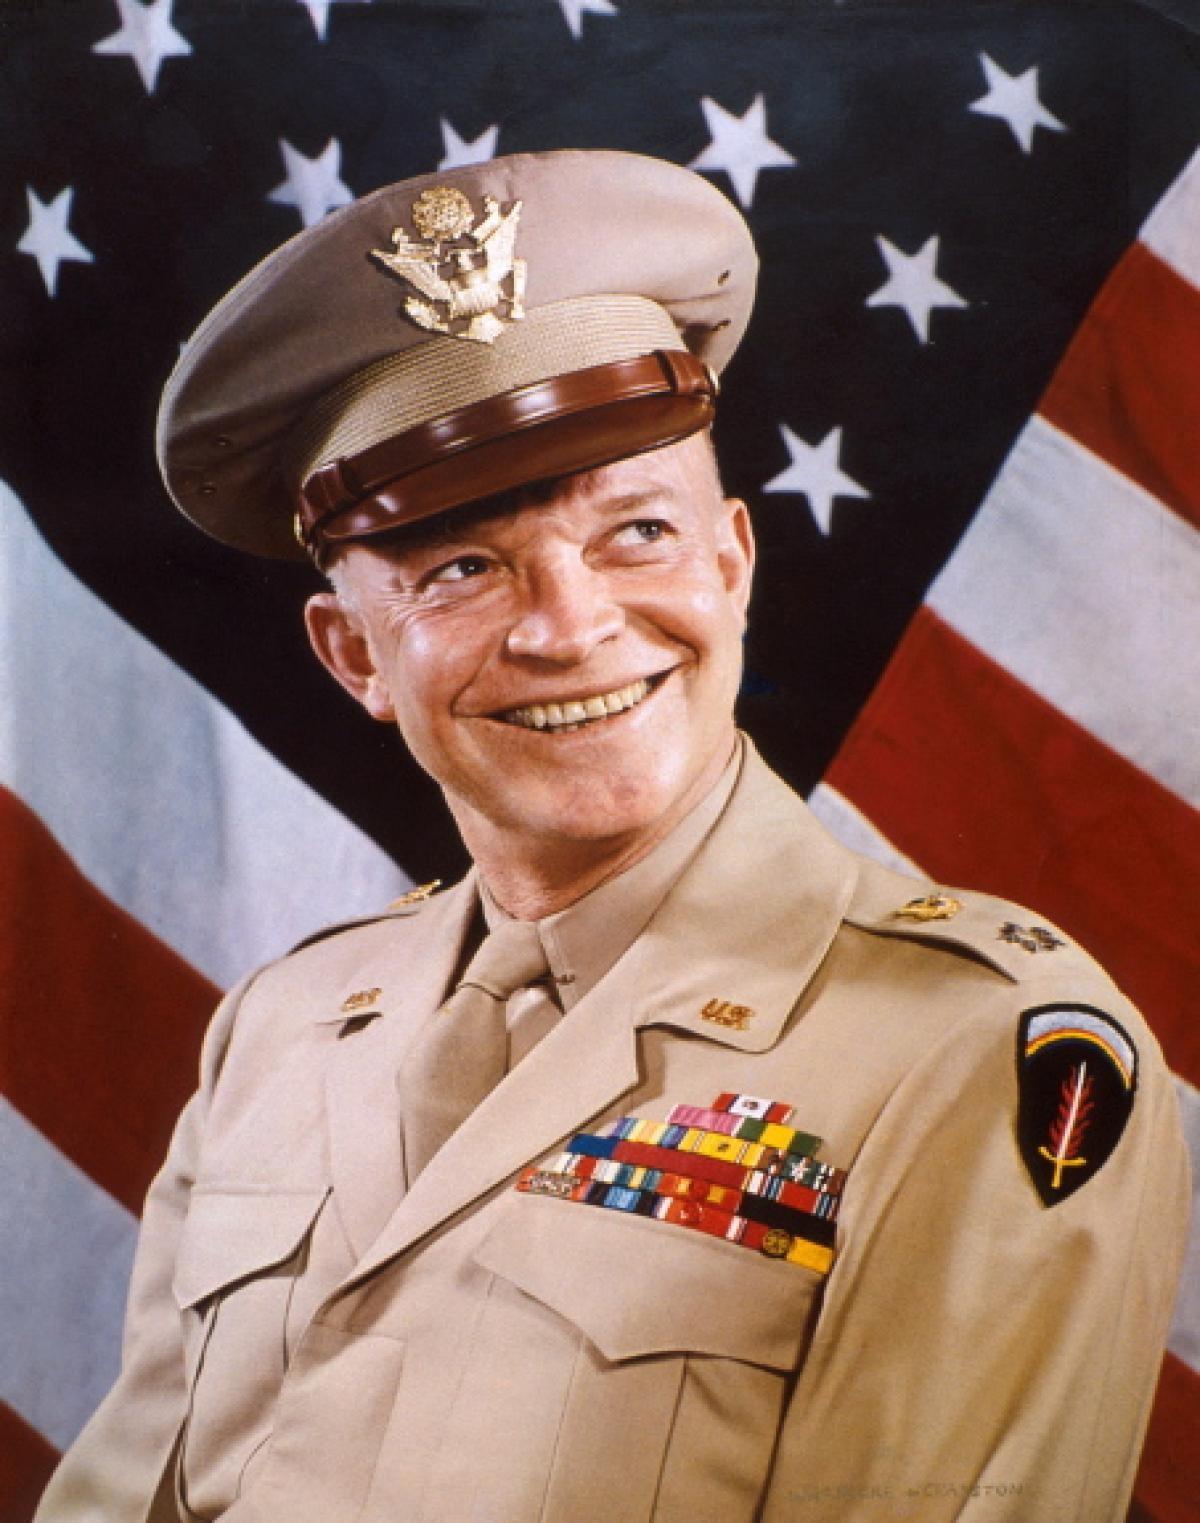 اهم الجنرالات العسكريين الذين شكلوا مسار الحرب العالمية الثانية - دوايت آيزنهاور